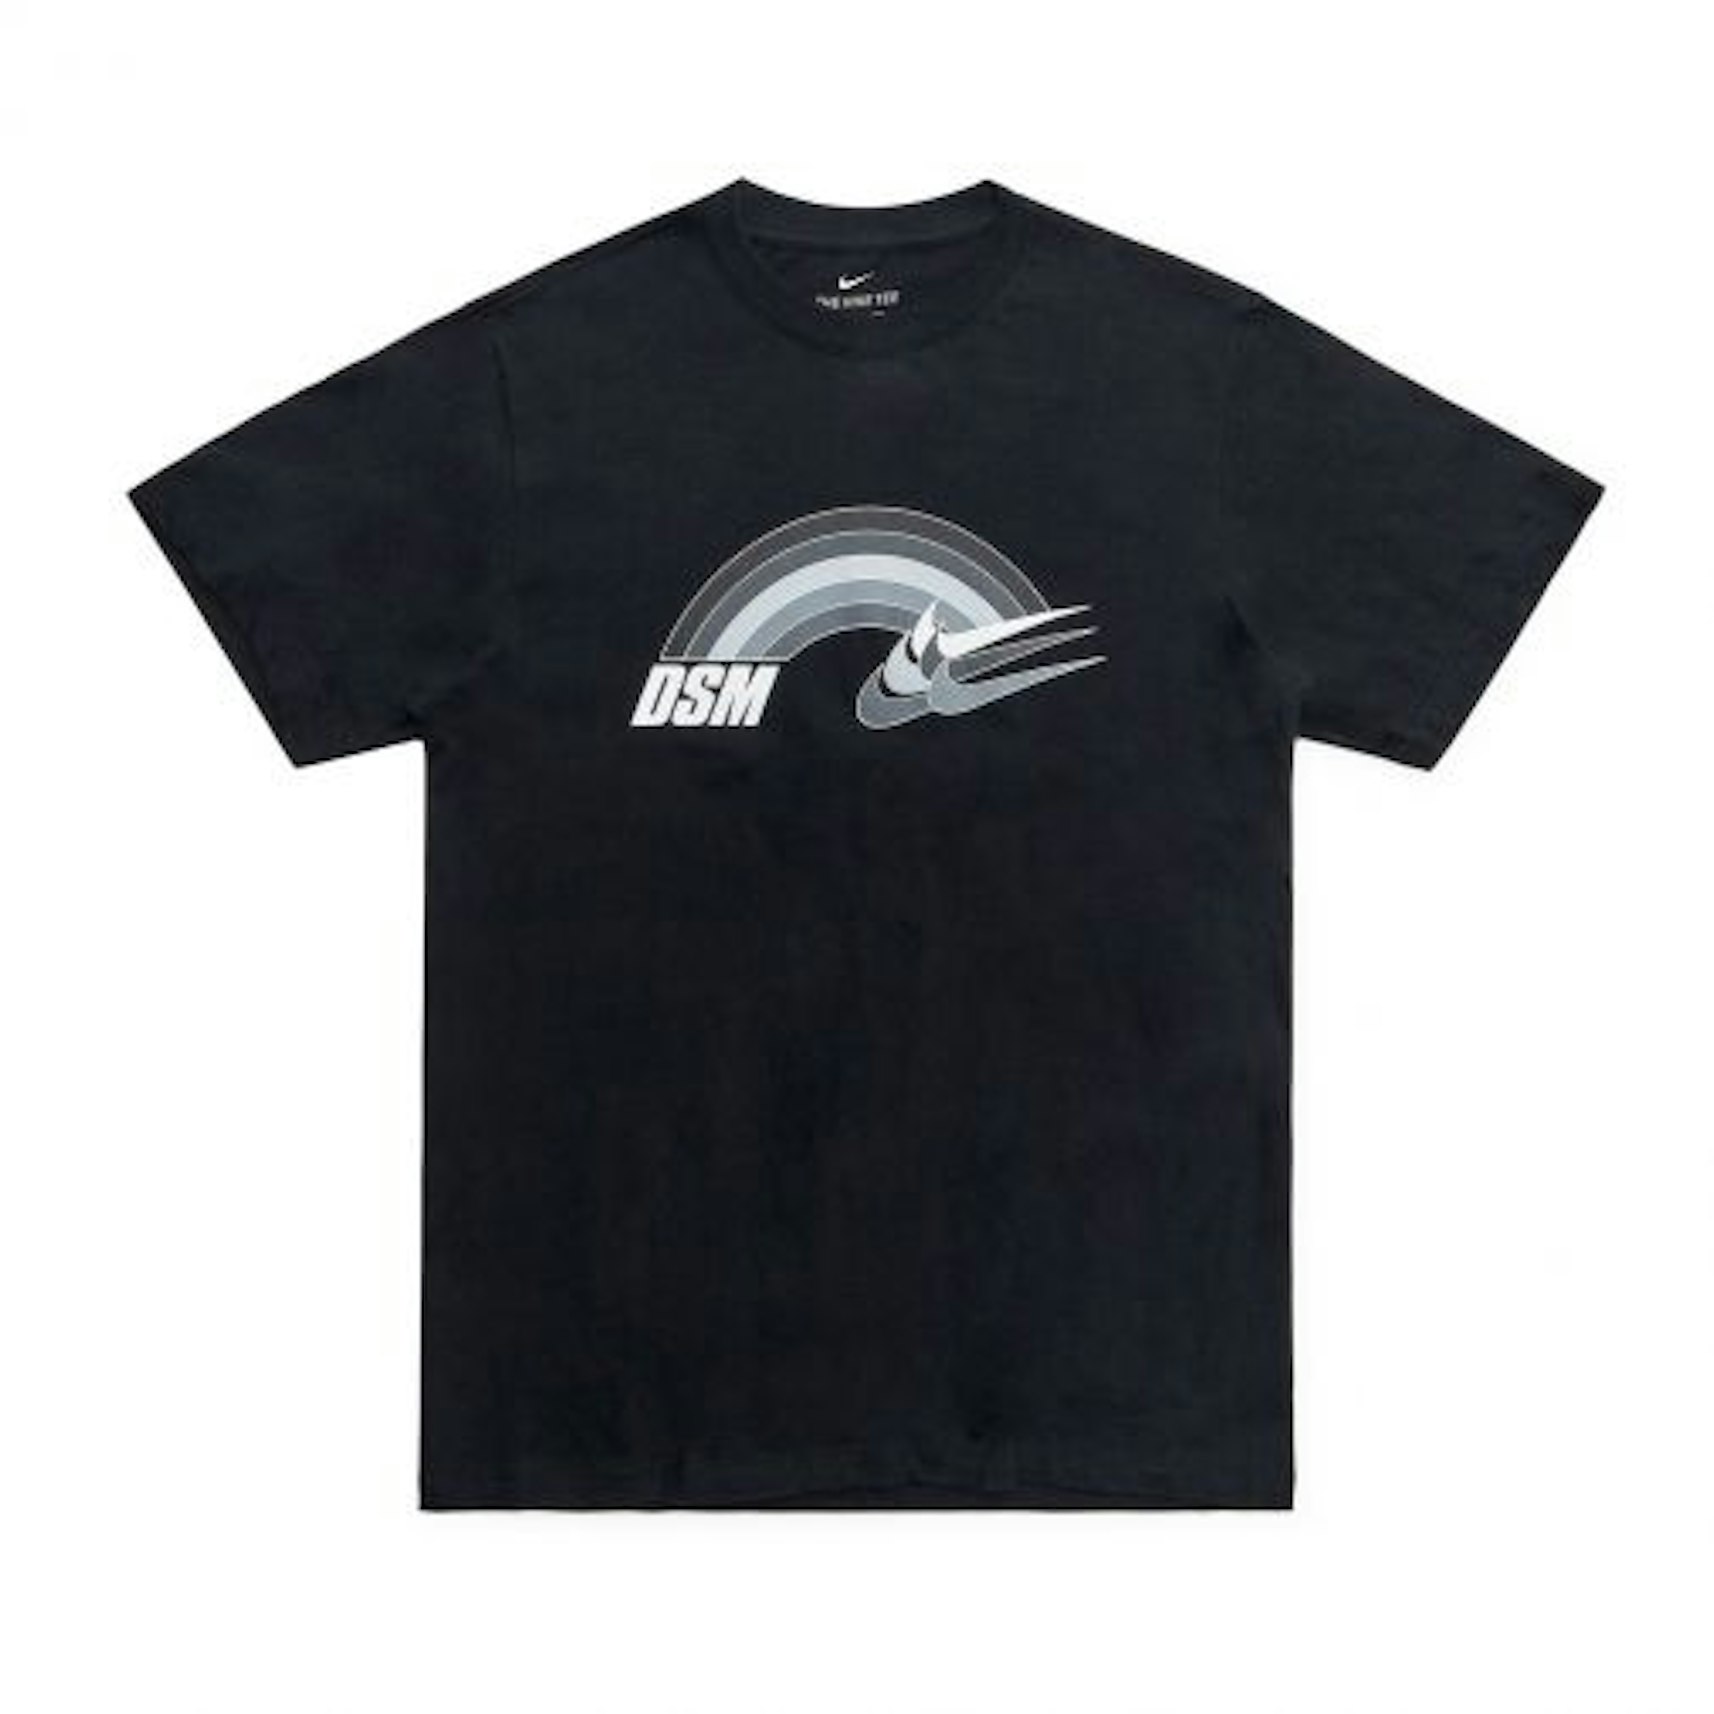 Muy enojado sacudir Traducción Nike x Dover Street Market Special Rainbow T-Shirt Black - FW19 Men's - US